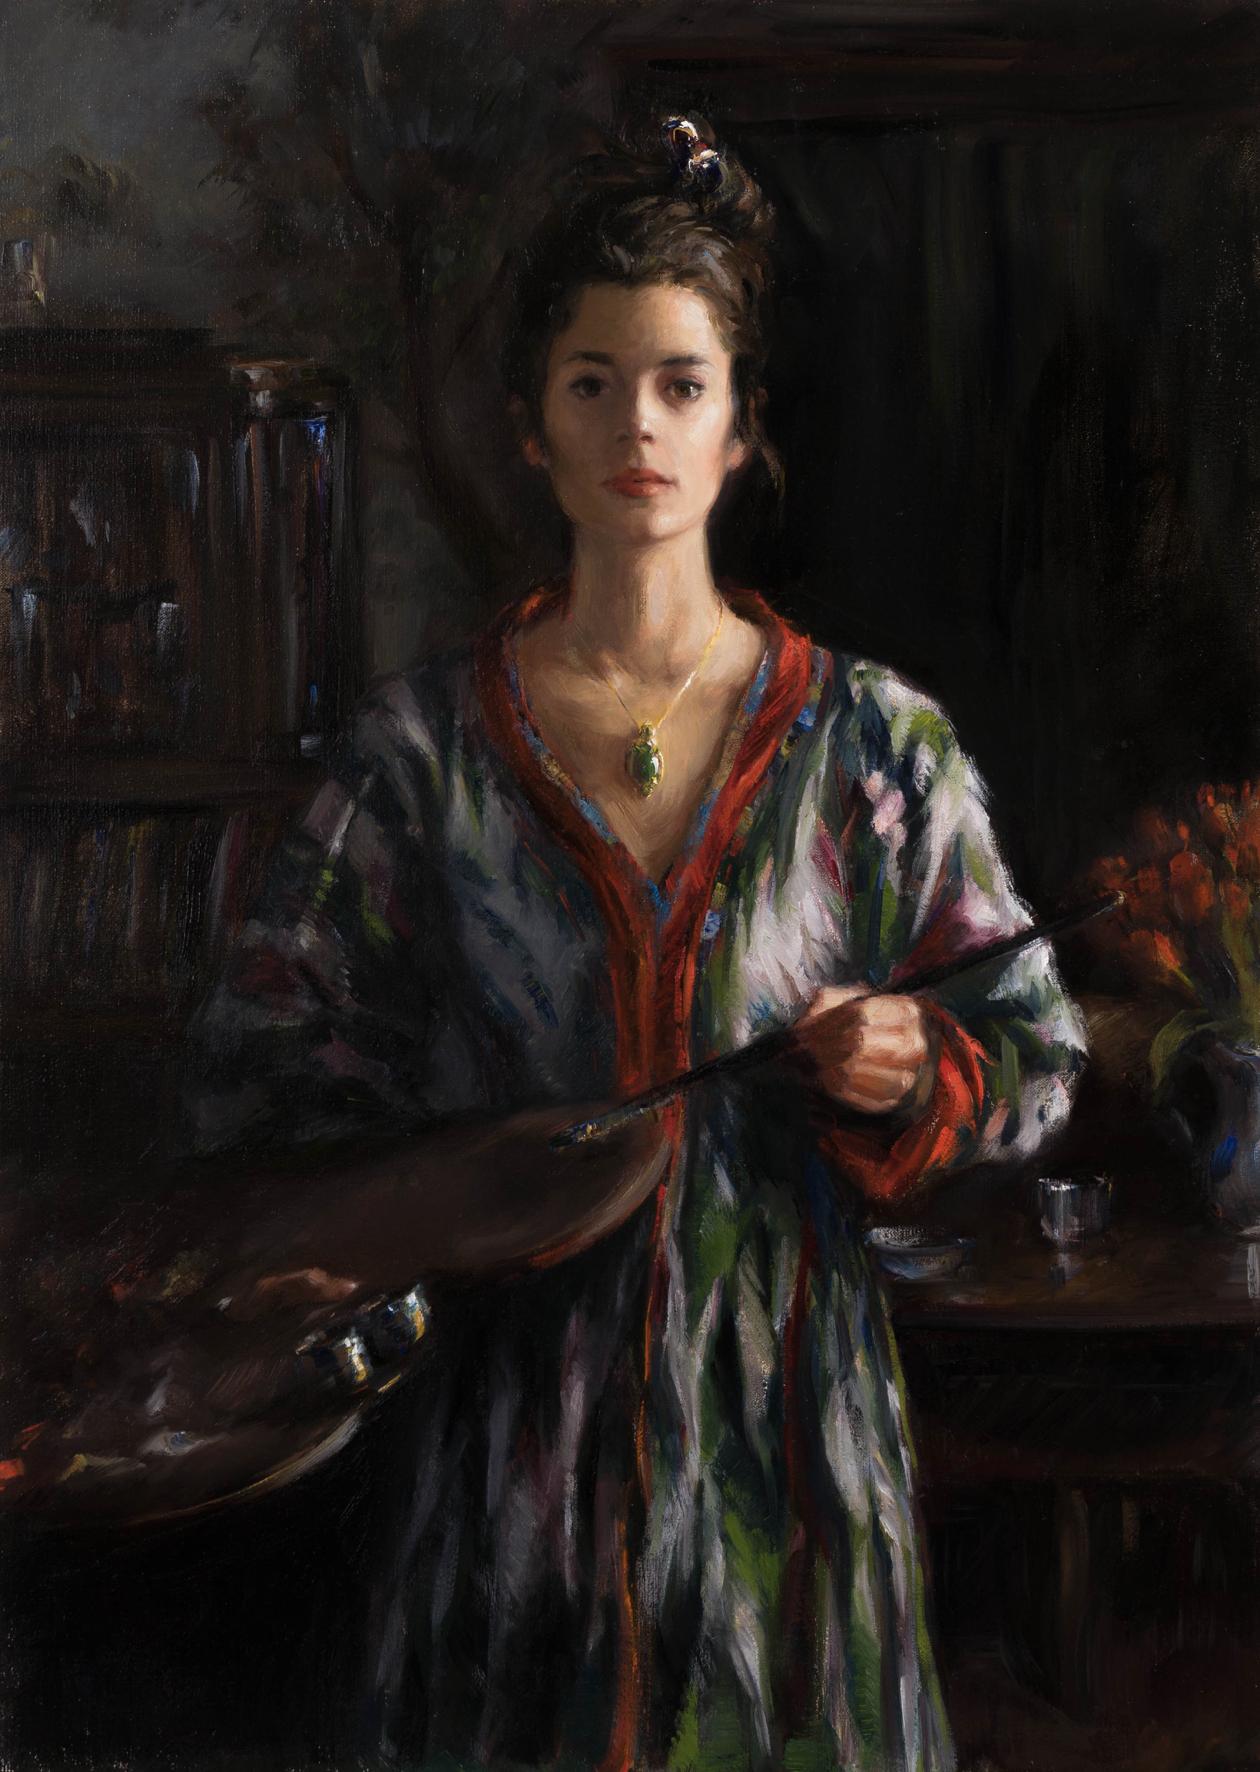 Portrait Painting Tina Orsolic Dalessio - "Departure", autoportrait réaliste de style 19e siècle par l'artiste croate. 